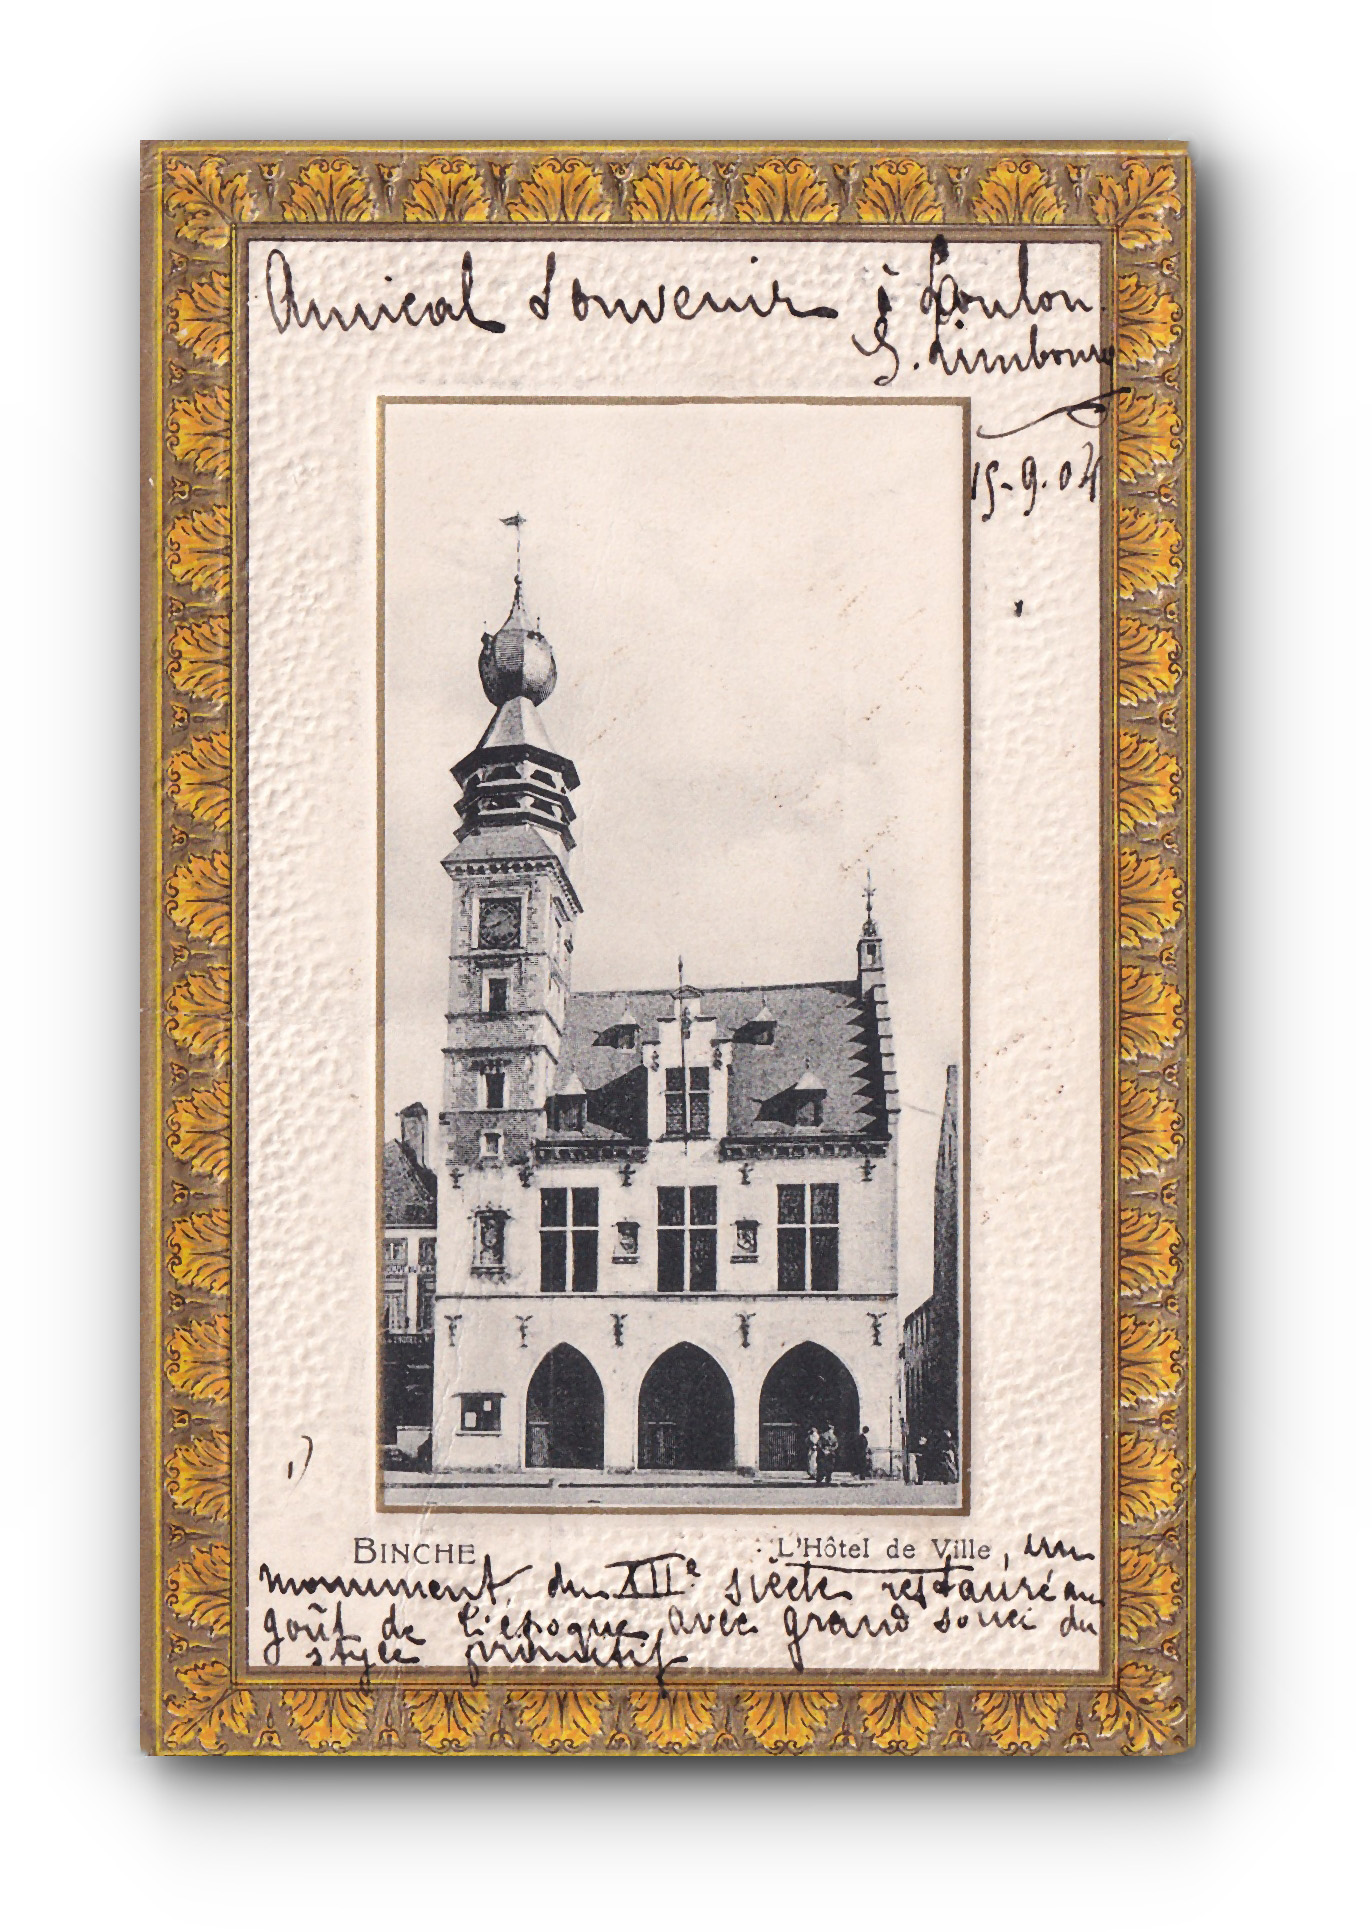 - L'Hôtel de Ville - BINCHE - 15.09.1904 -